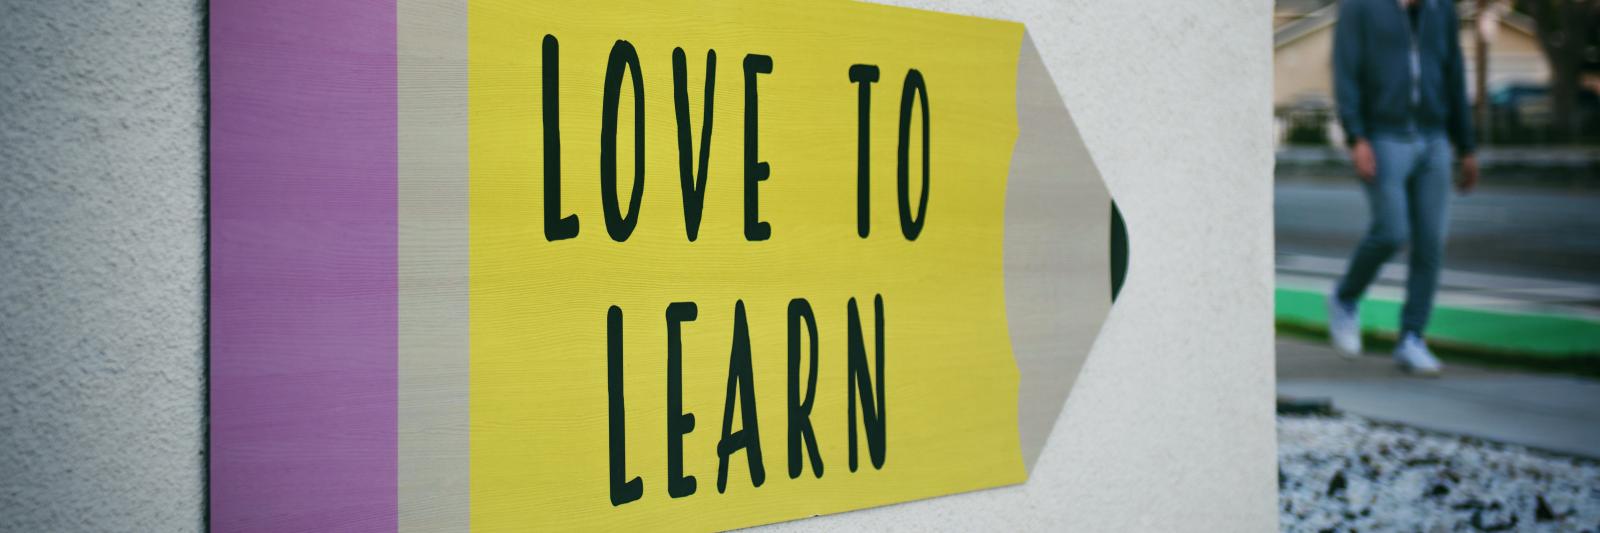 Cartello con scritto "Love to learn"